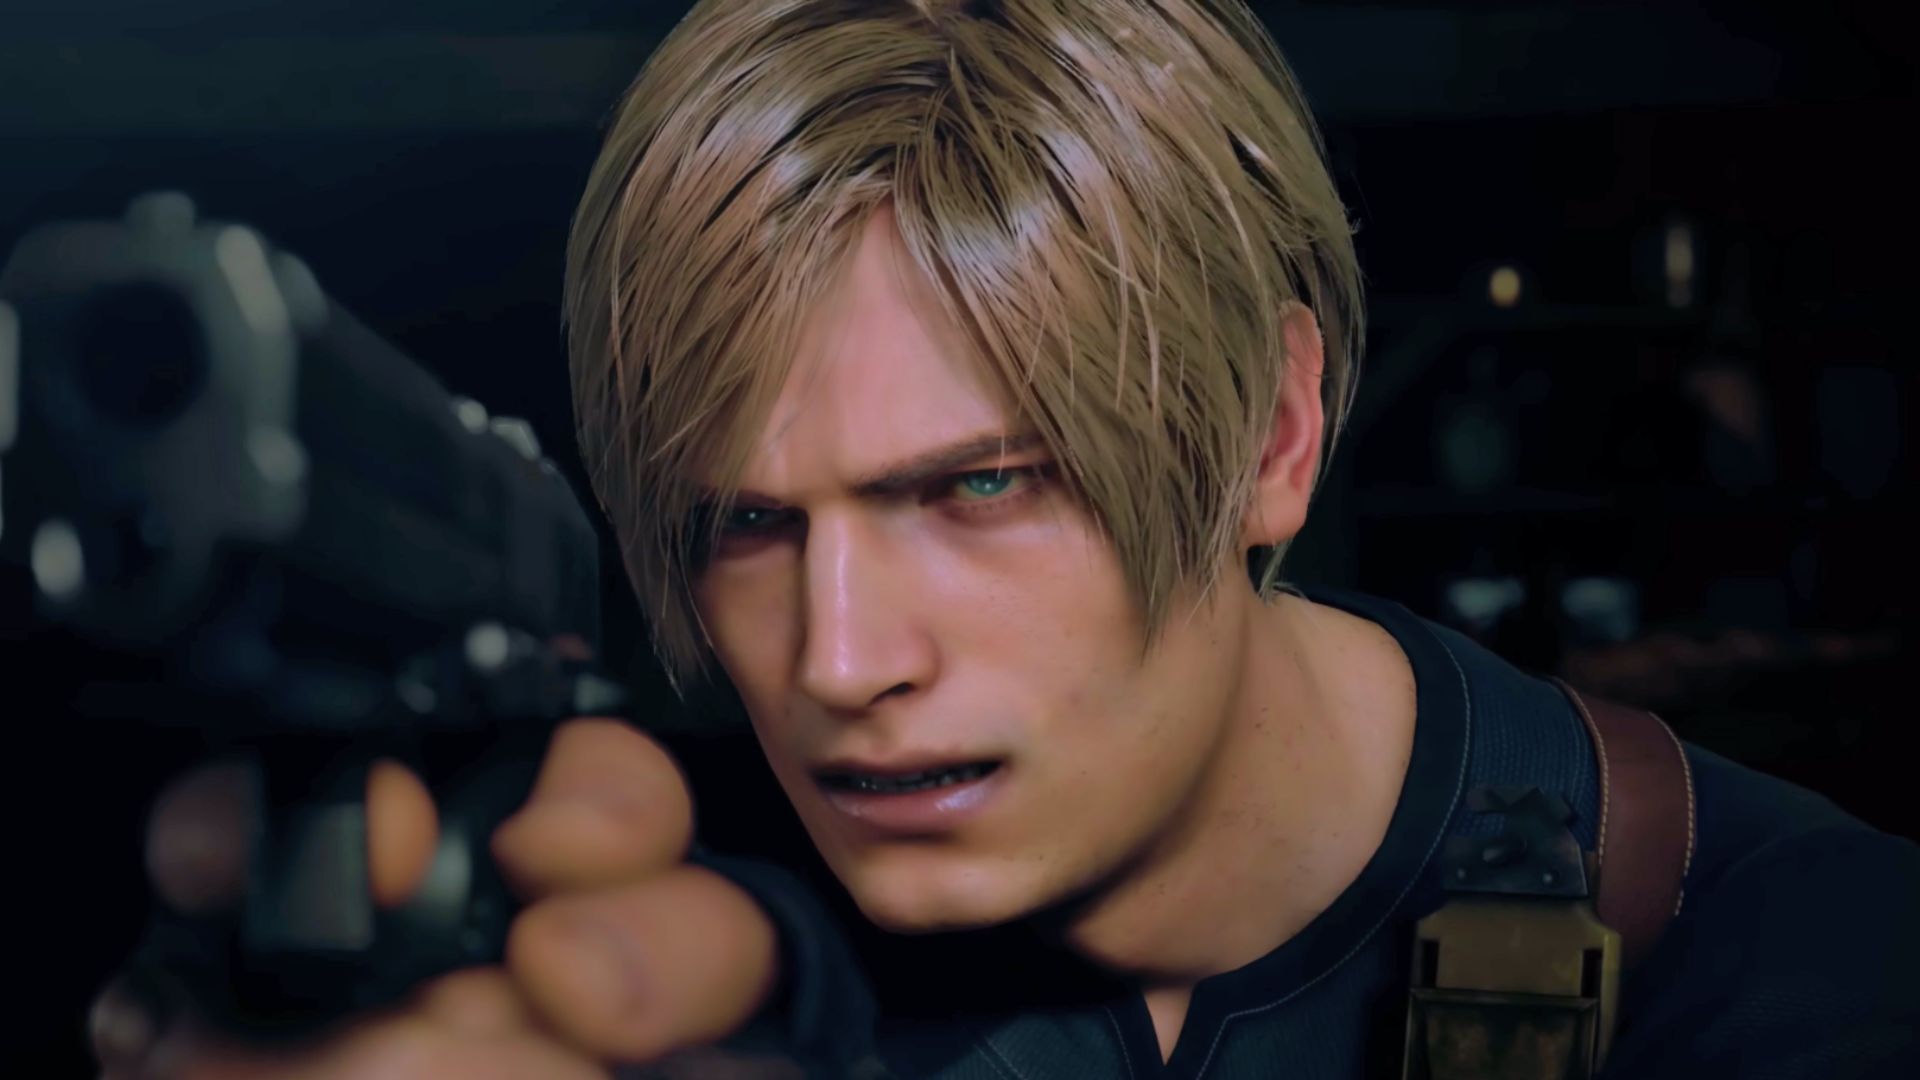 Resident Evil 4 Remake easter egg renvoie agréablement à RE2